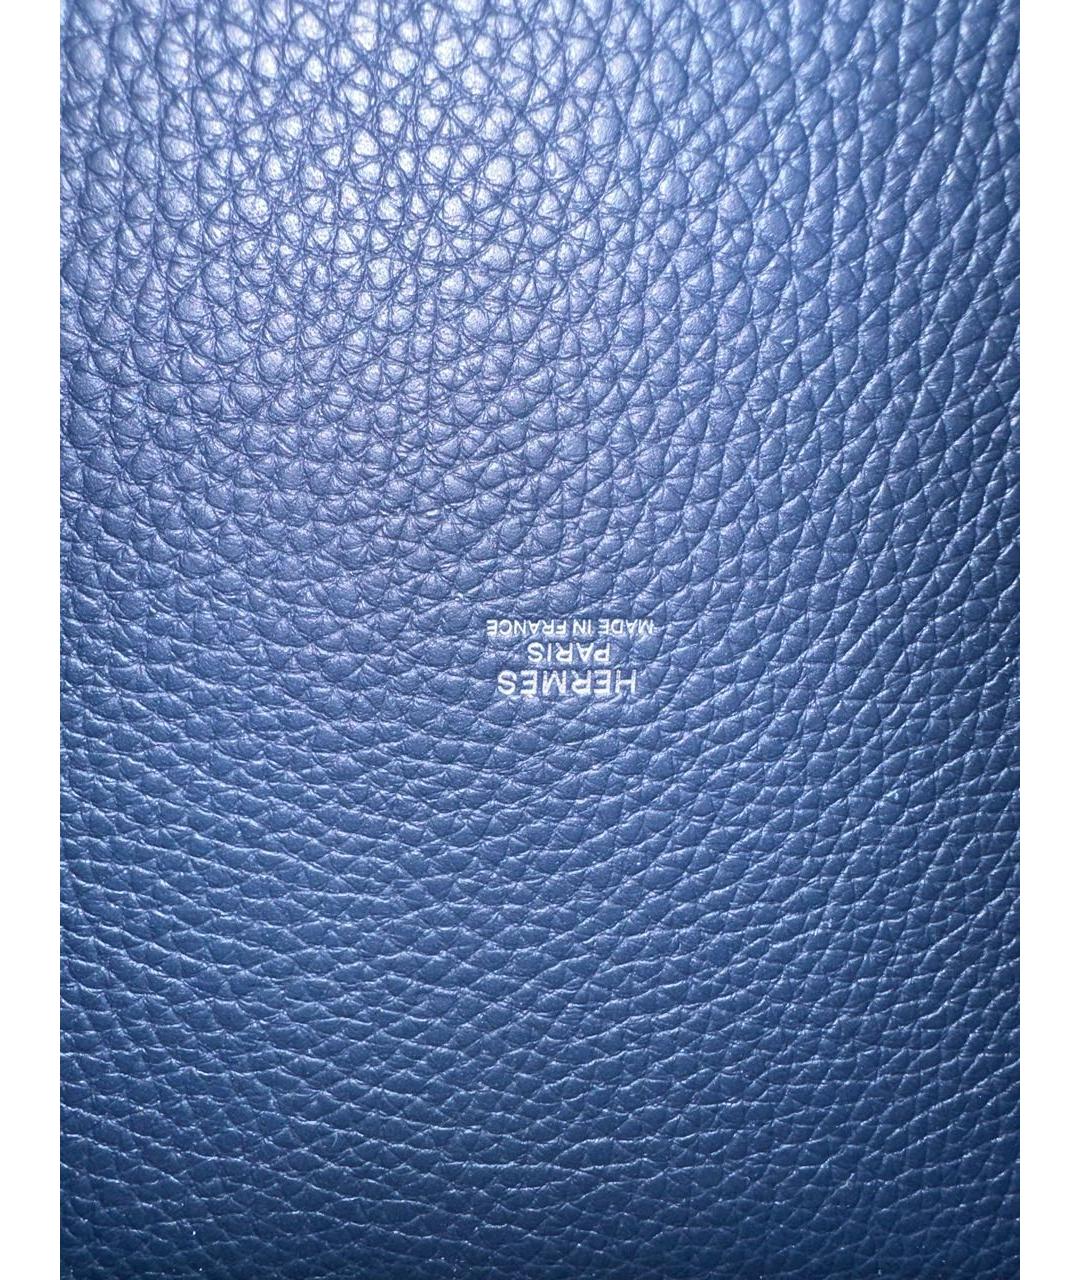 HERMES PRE-OWNED Темно-синяя кожаная сумка с короткими ручками, фото 5